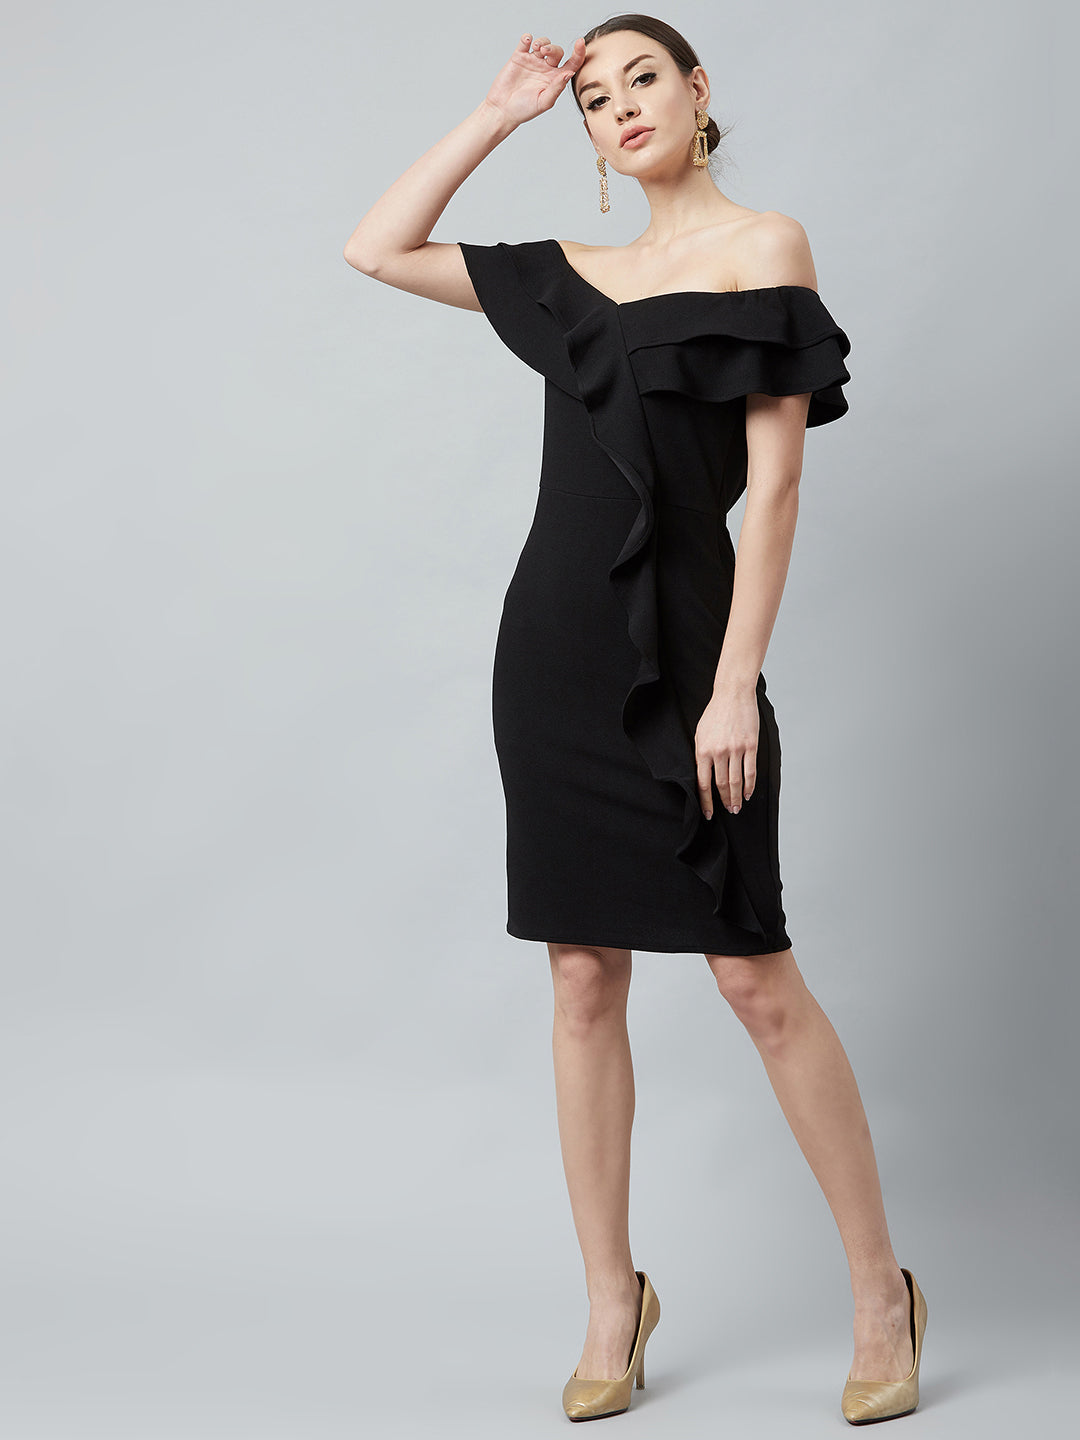 Athena Women Black Solid Bodycon Dress - Athena Lifestyle